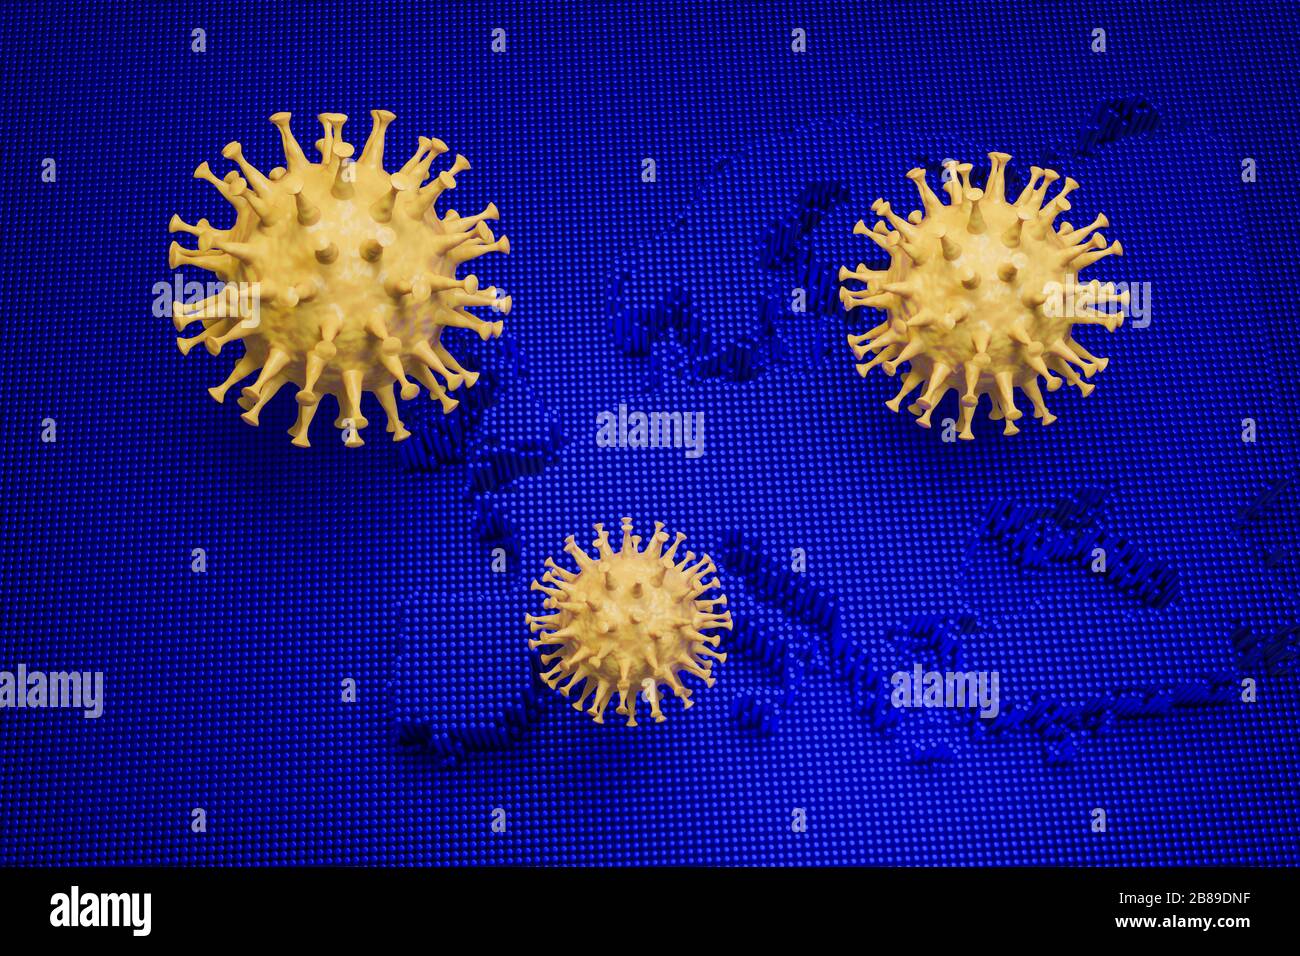 Rendu tridimensionnel : éclosion de nouveau Coronavirus SRAS-CoV-2 en Europe - image schématique des virus de la famille Corona sur une image bleue d'une carte européenne Banque D'Images